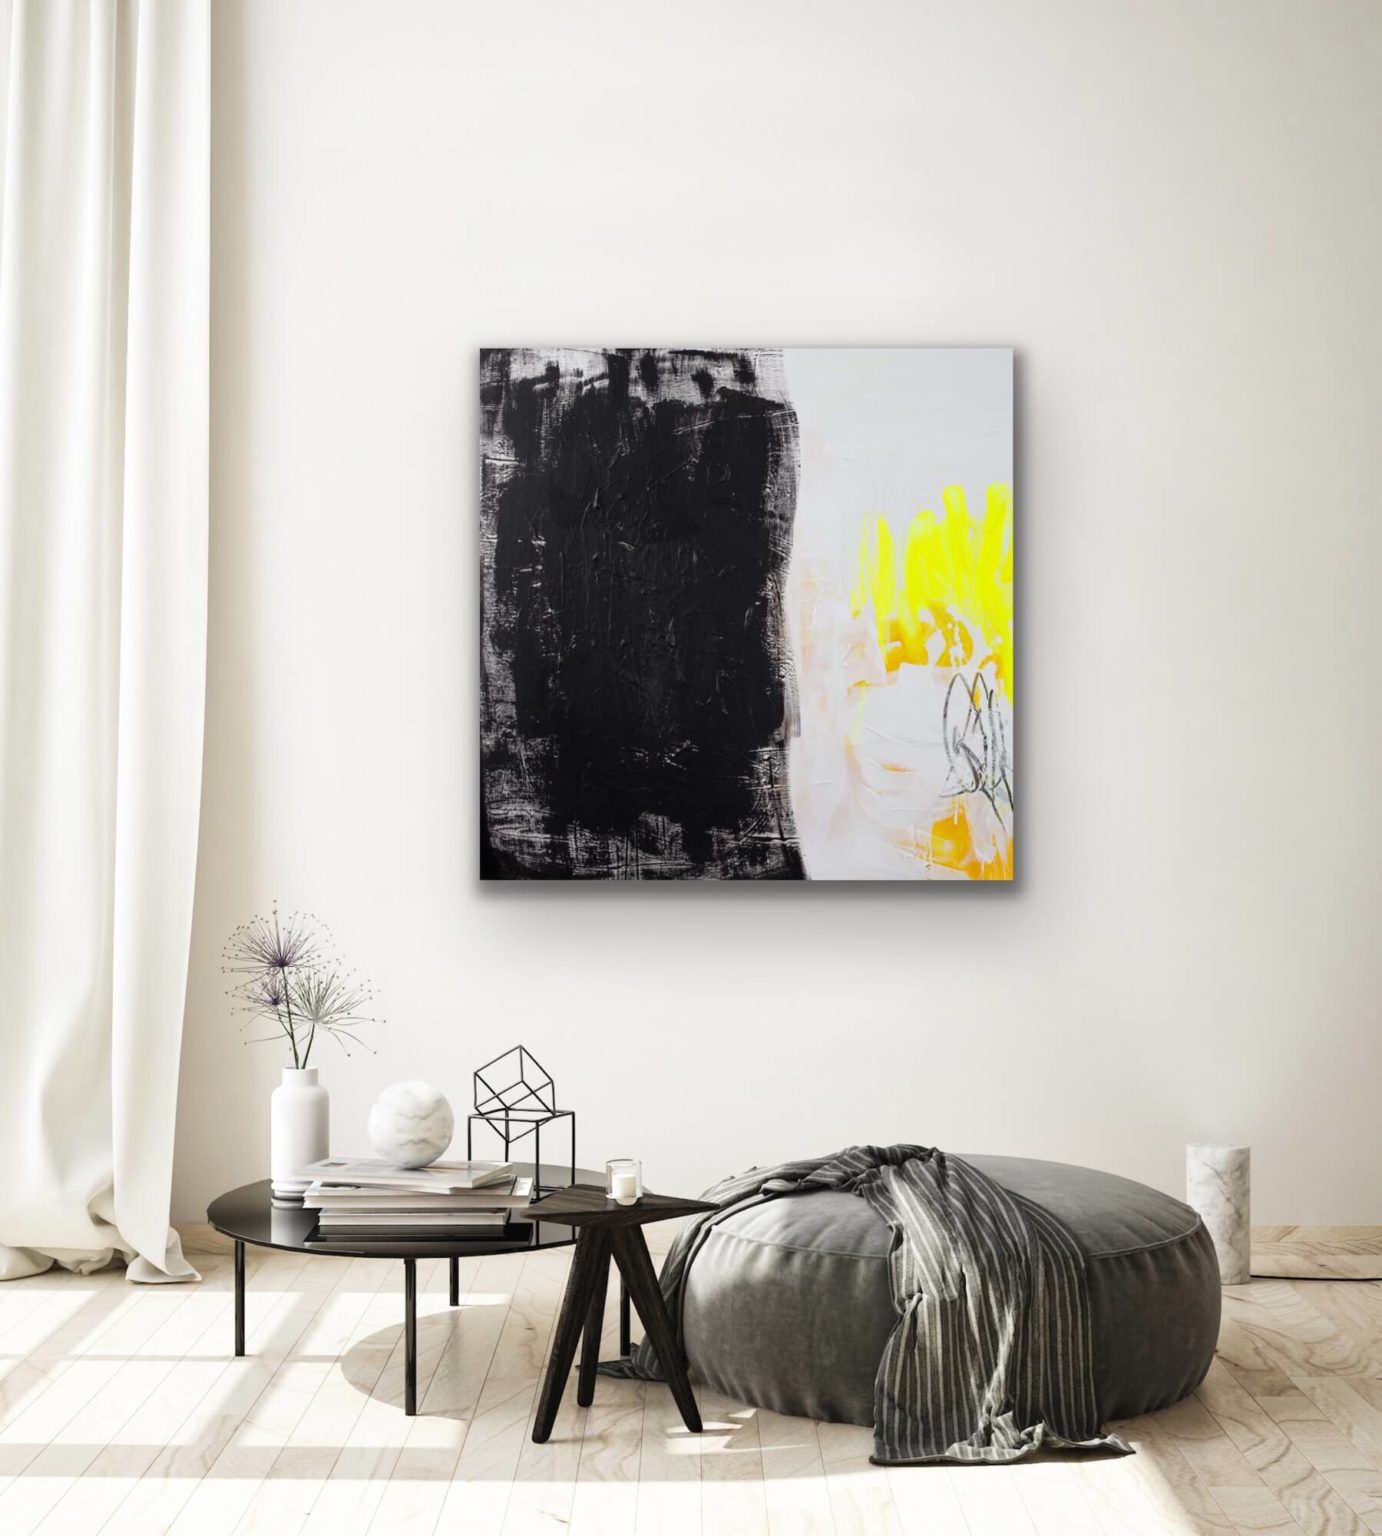 contemporary art collector pandoras box Petronilla HohenwARTer art and living interior design abstract art black yellow